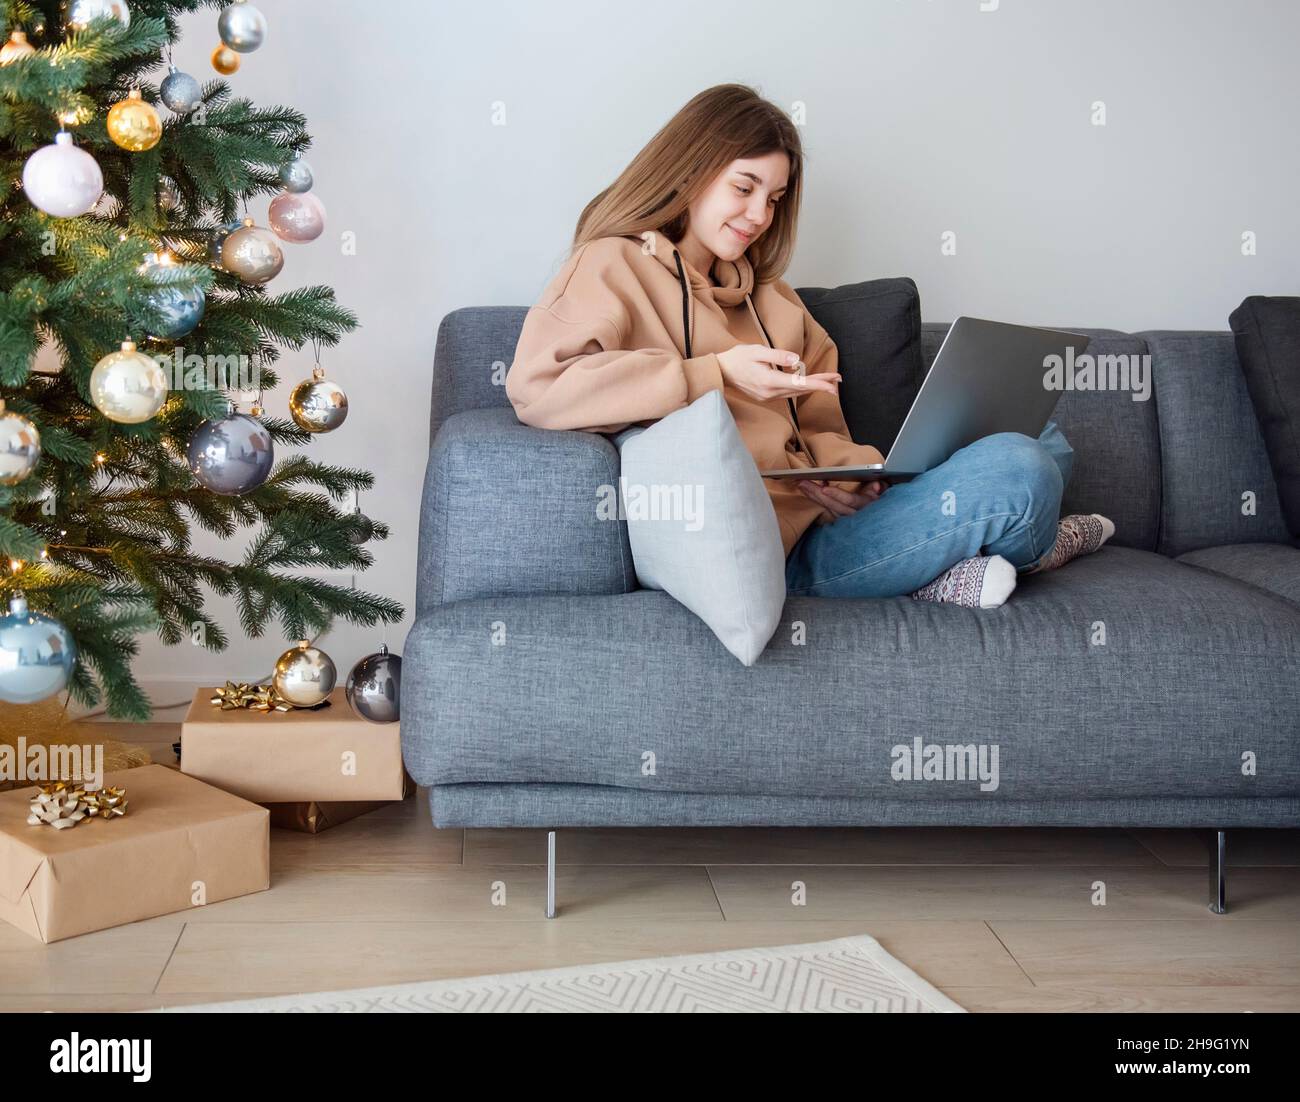 Adolescente avec ordinateur portable sur un canapé dans la salle de séjour près de l'arbre de Noël Banque D'Images